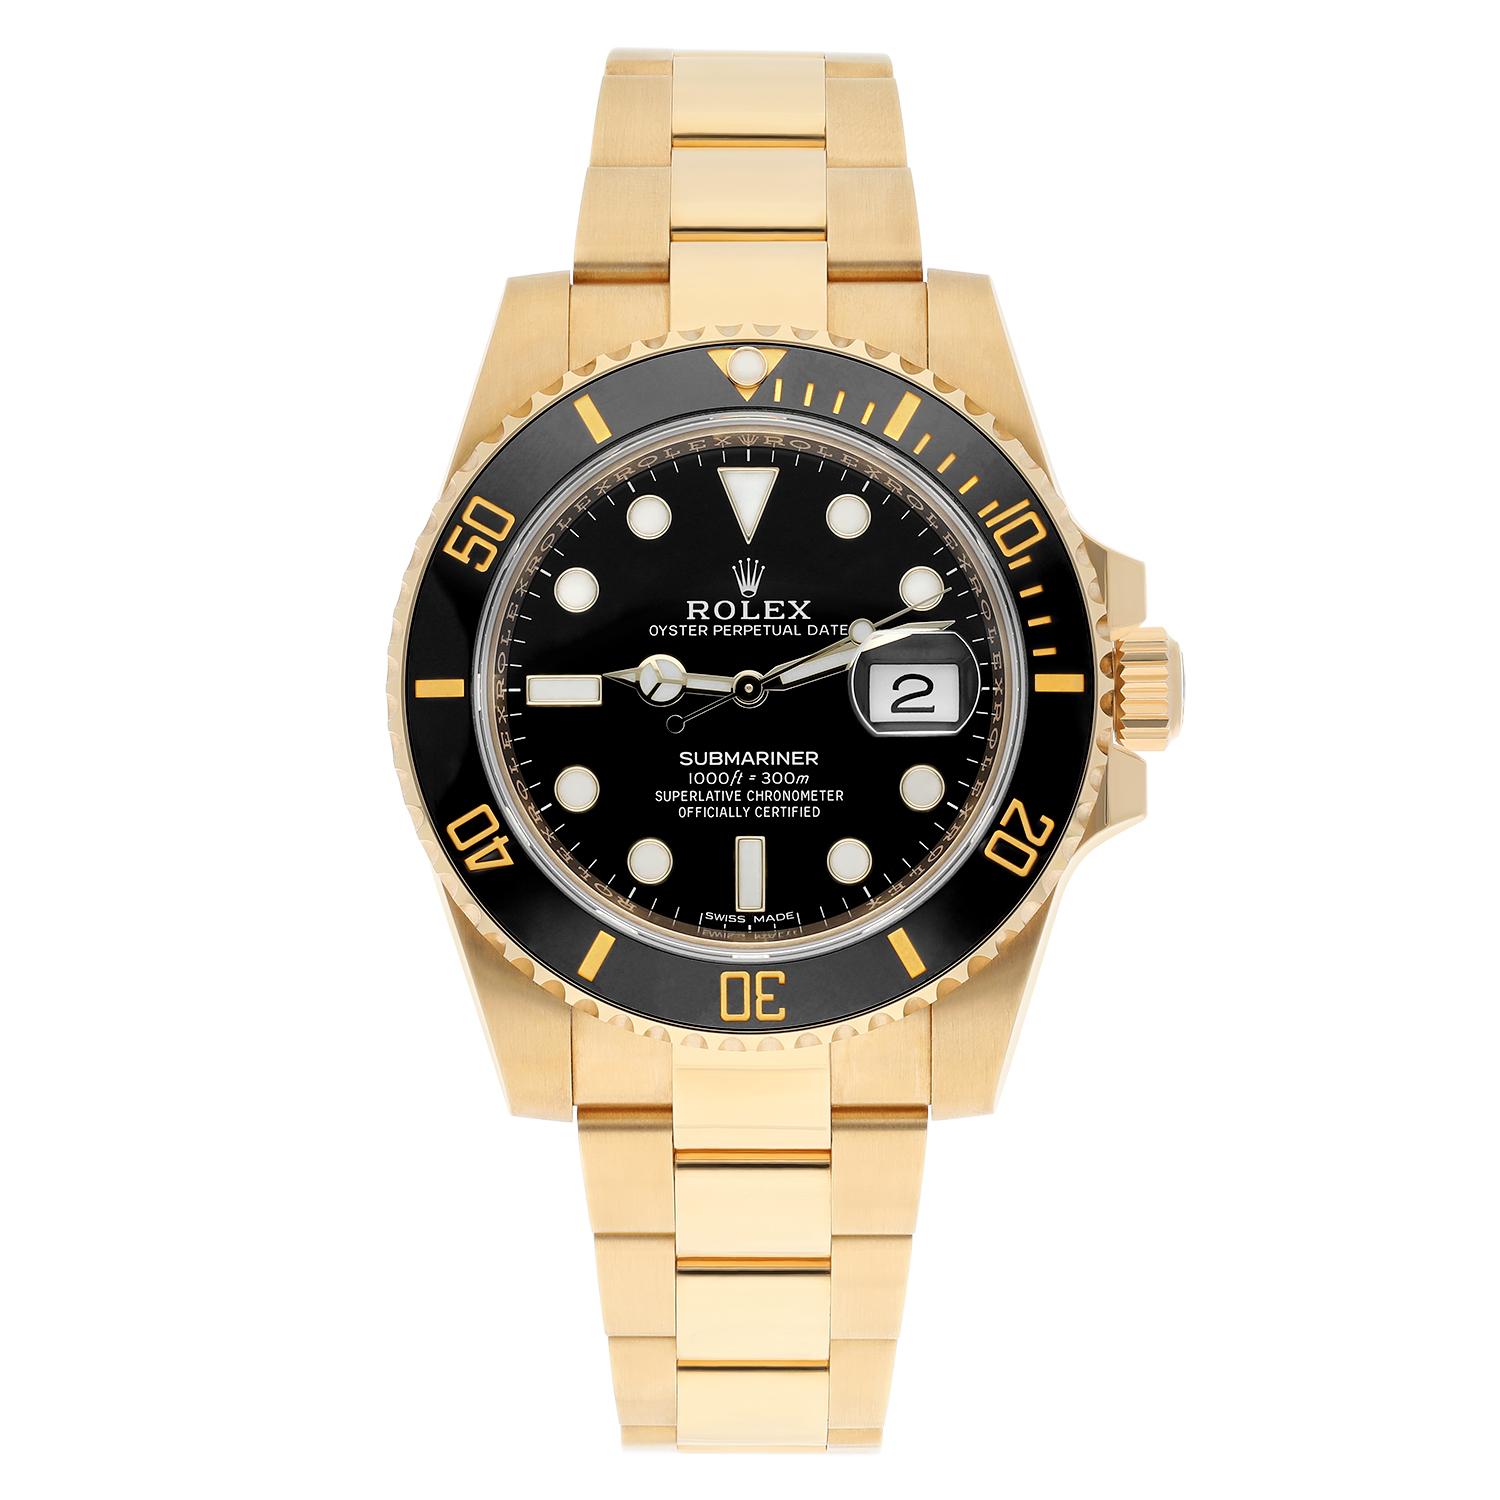 Montre Rolex Submariner Date Ceramic Bezel Yellow Gold with Black Dial 116618LN jamais portée.
La montre est livrée avec la boîte Rolex d'origine, la carte de garantie Rolex datée de 2021 et l'étiquette verte.
Neuf sans étiquette. 